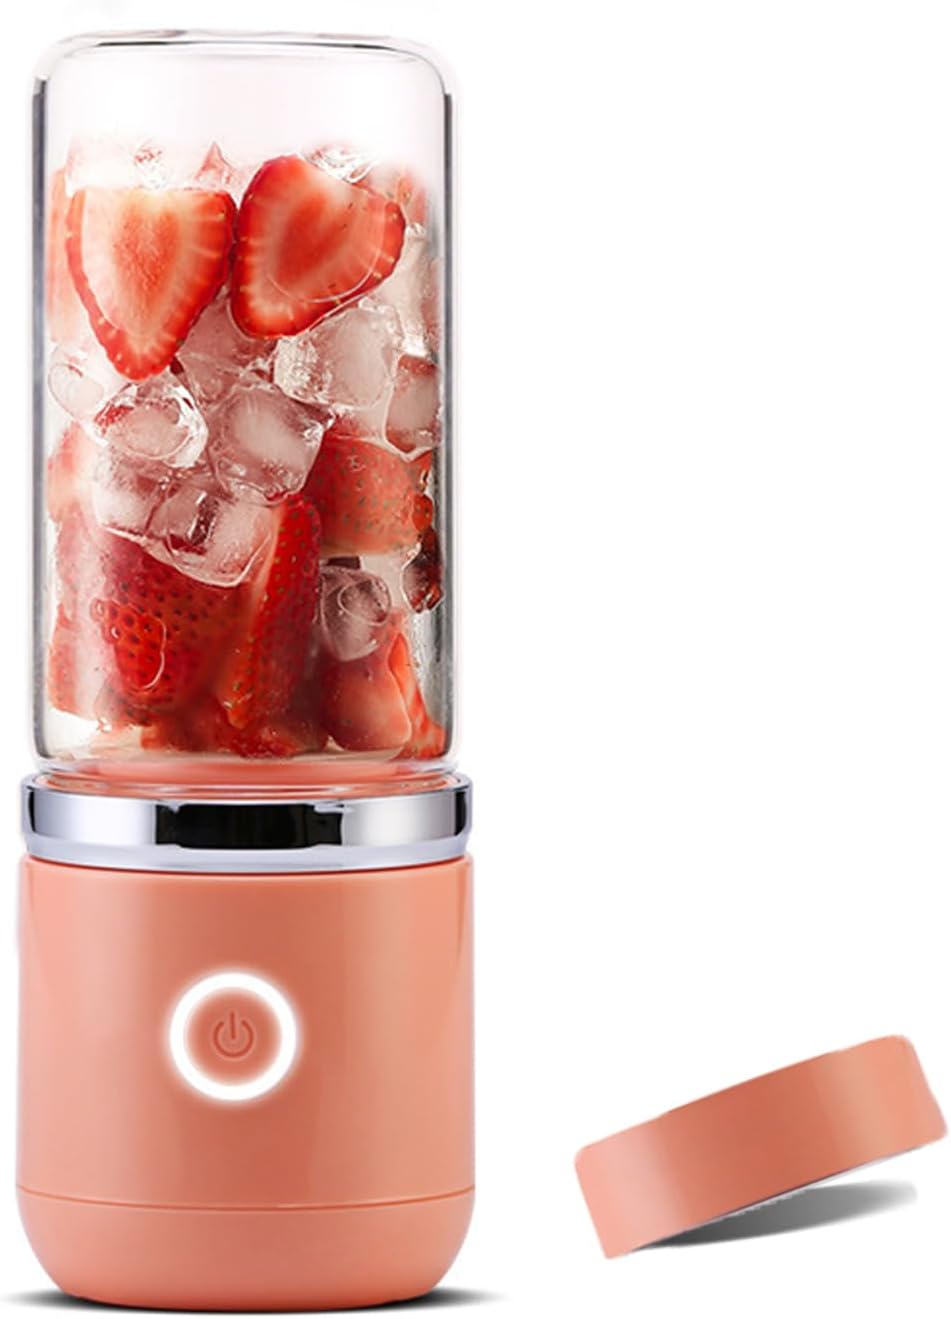 Tragbarer Mixer 350ml, USB Mini Mixer Blender mit Glasbecher standmixer glas für Shake, Smoothie, Gemüse, Obst (Orange)